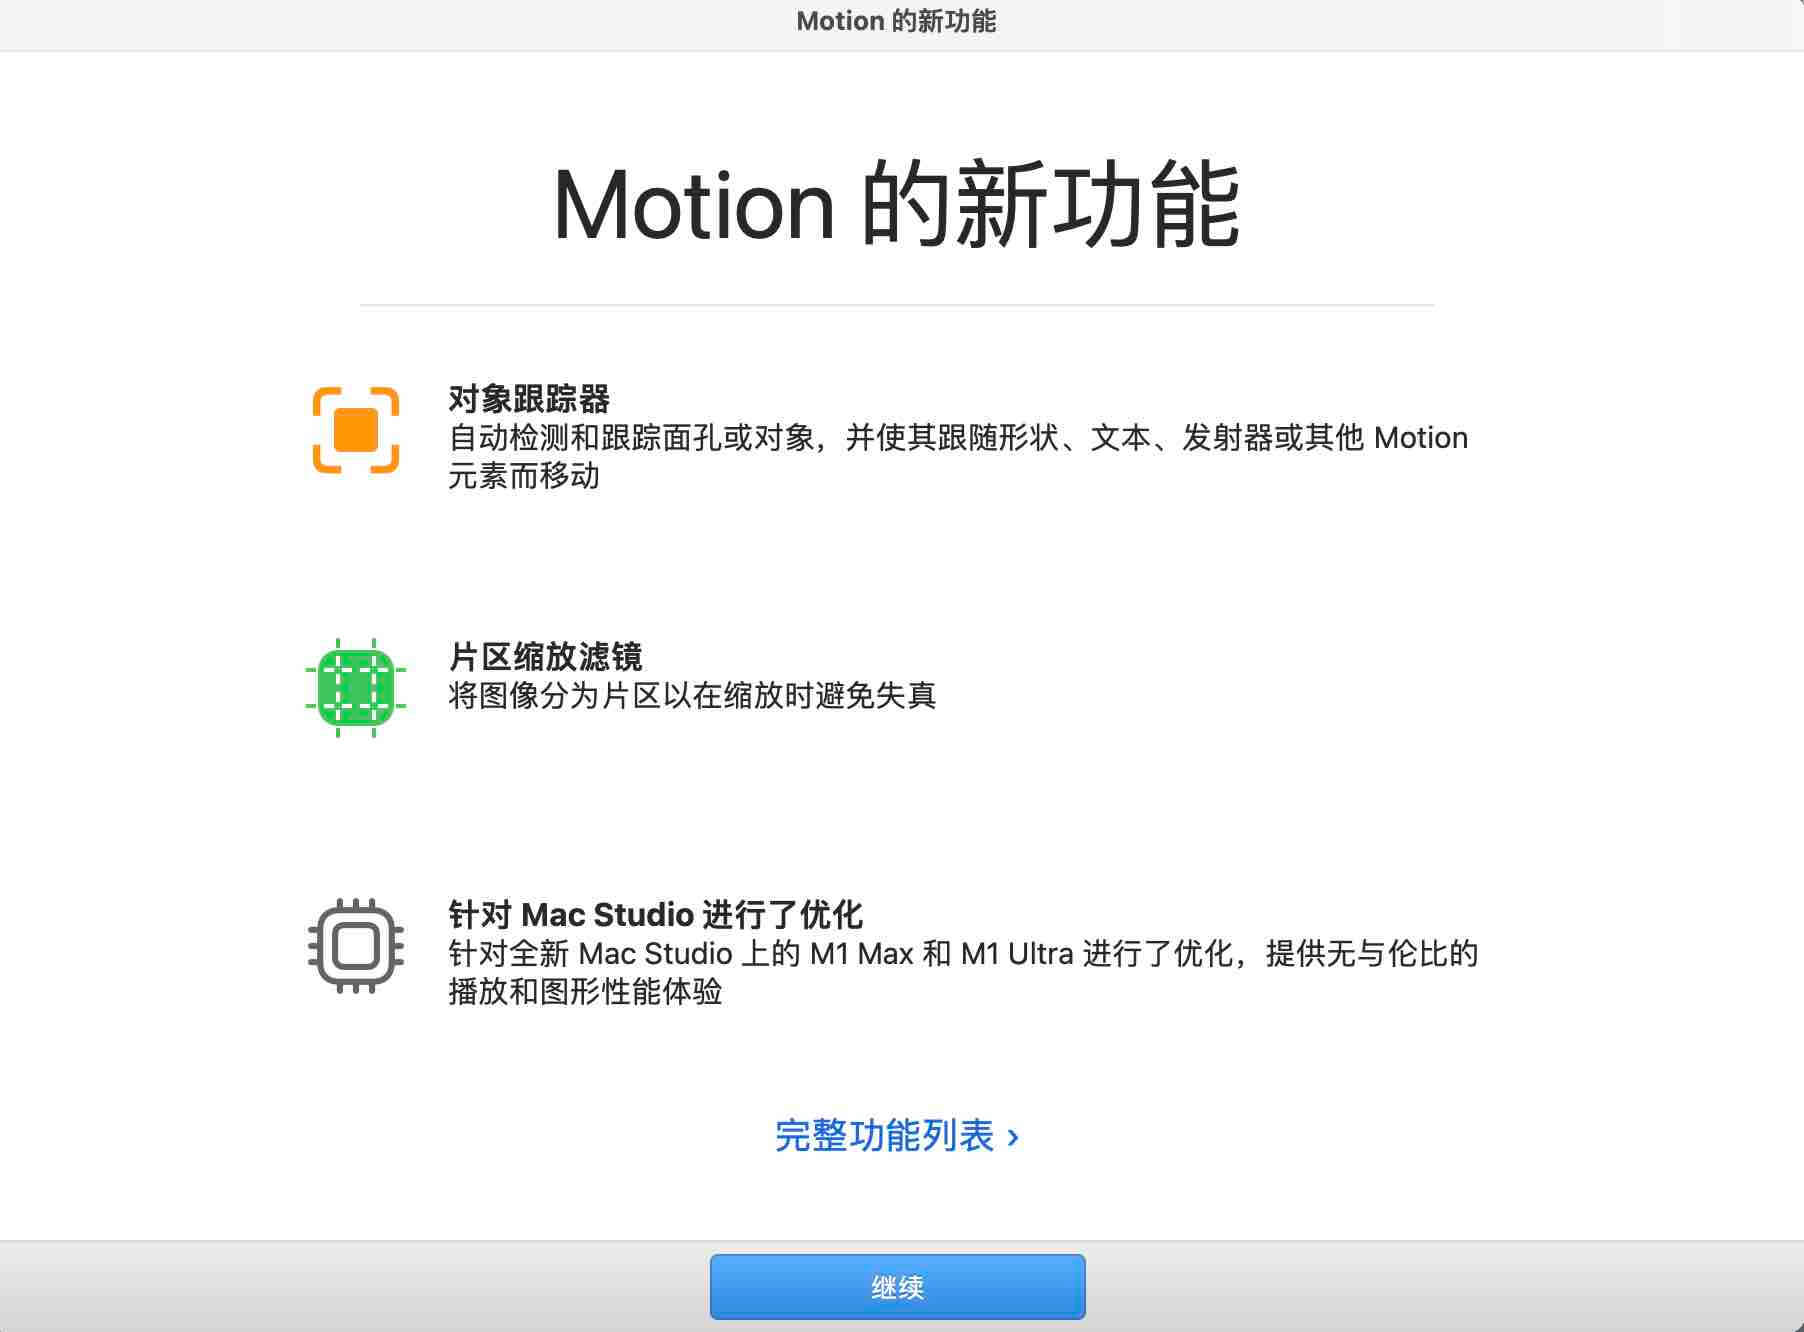 %title插图%num零号CG视觉Apple motion v5.6.3